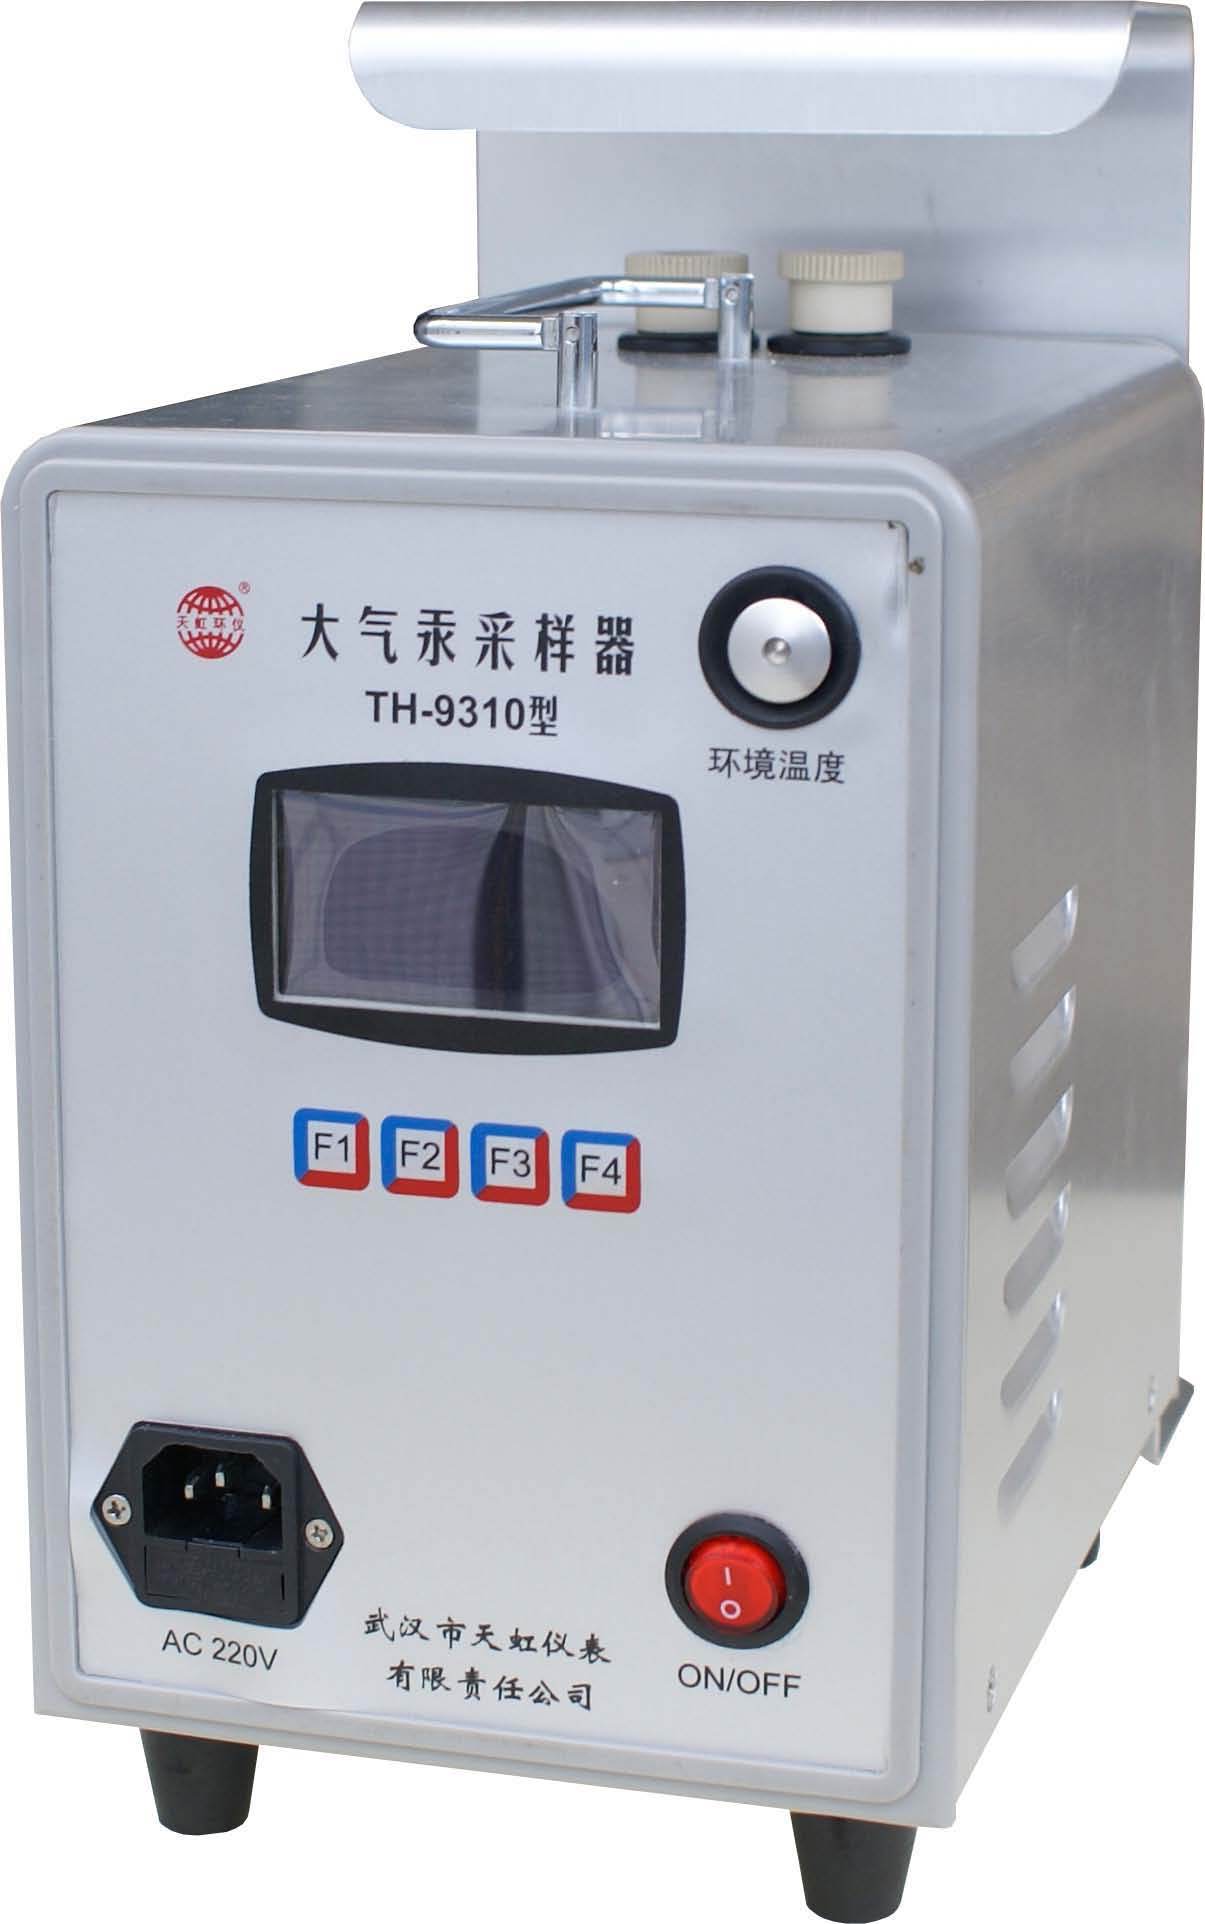 TH-9310大气汞采样器